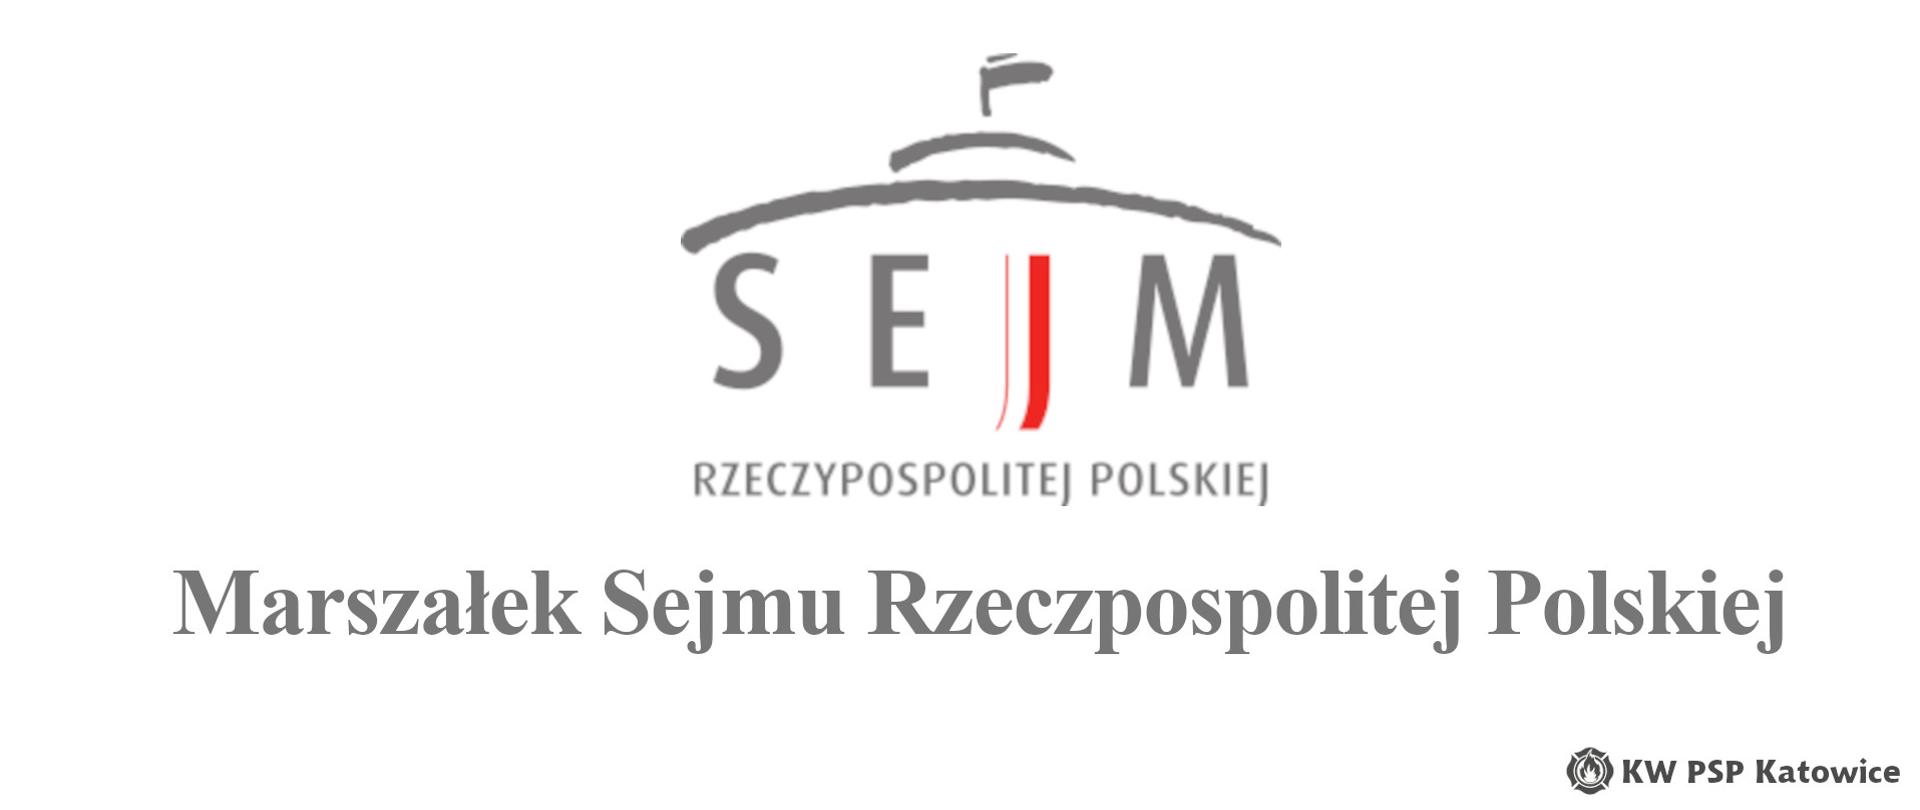 Ilustracja przedstawia logo Sejmu RP oraz duży czarny napis Marszałek Sejmu Rzeczpospolitej Polskiej. W dolnym prawym rogu znajduje się napis KW PSP Katowice.